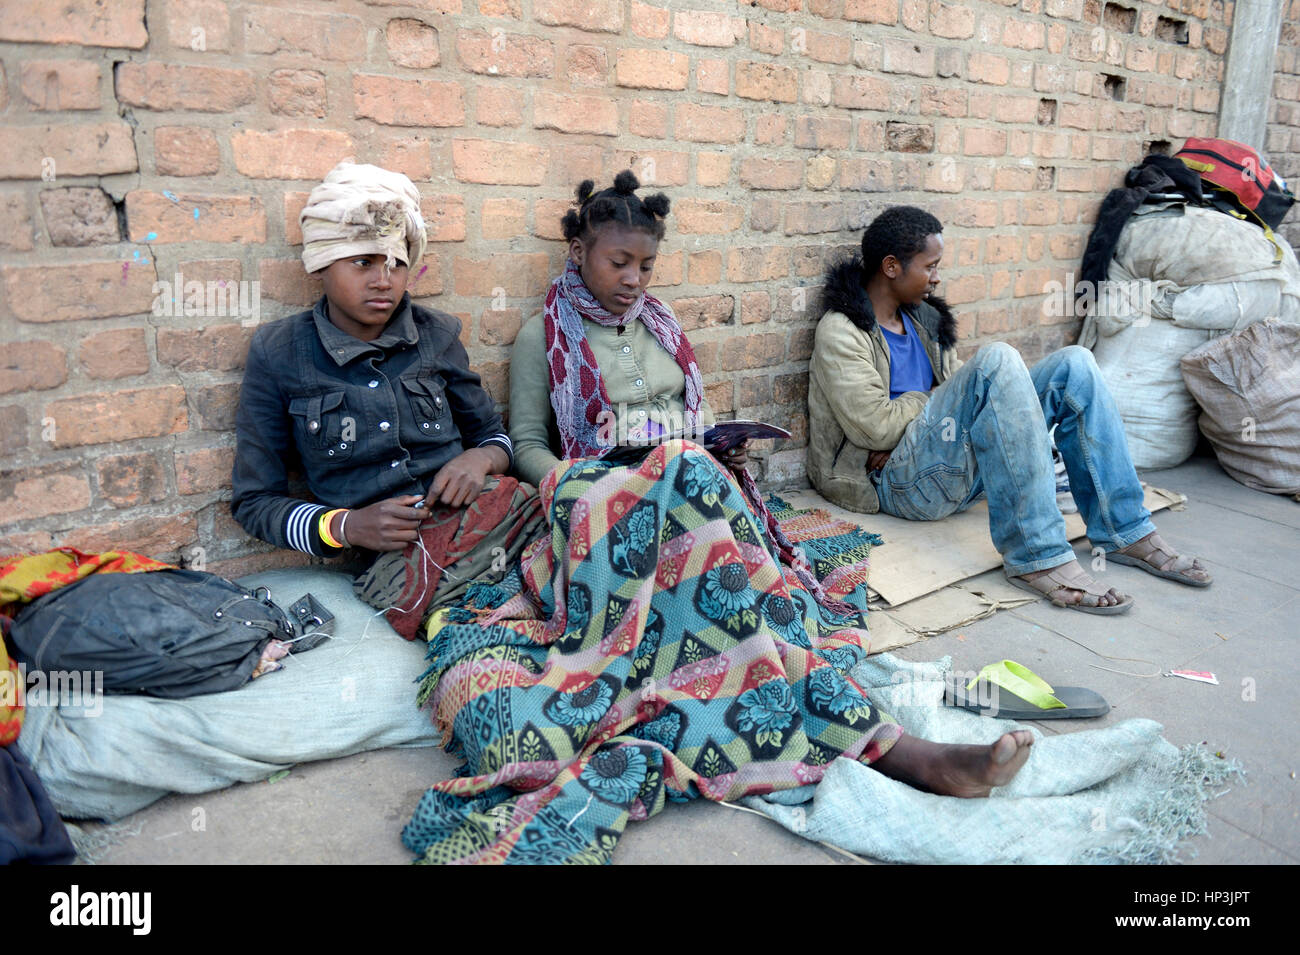 Los jóvenes sin hogar en la calle, en la provincia de Fianarantsoa, Madagascar Foto de stock